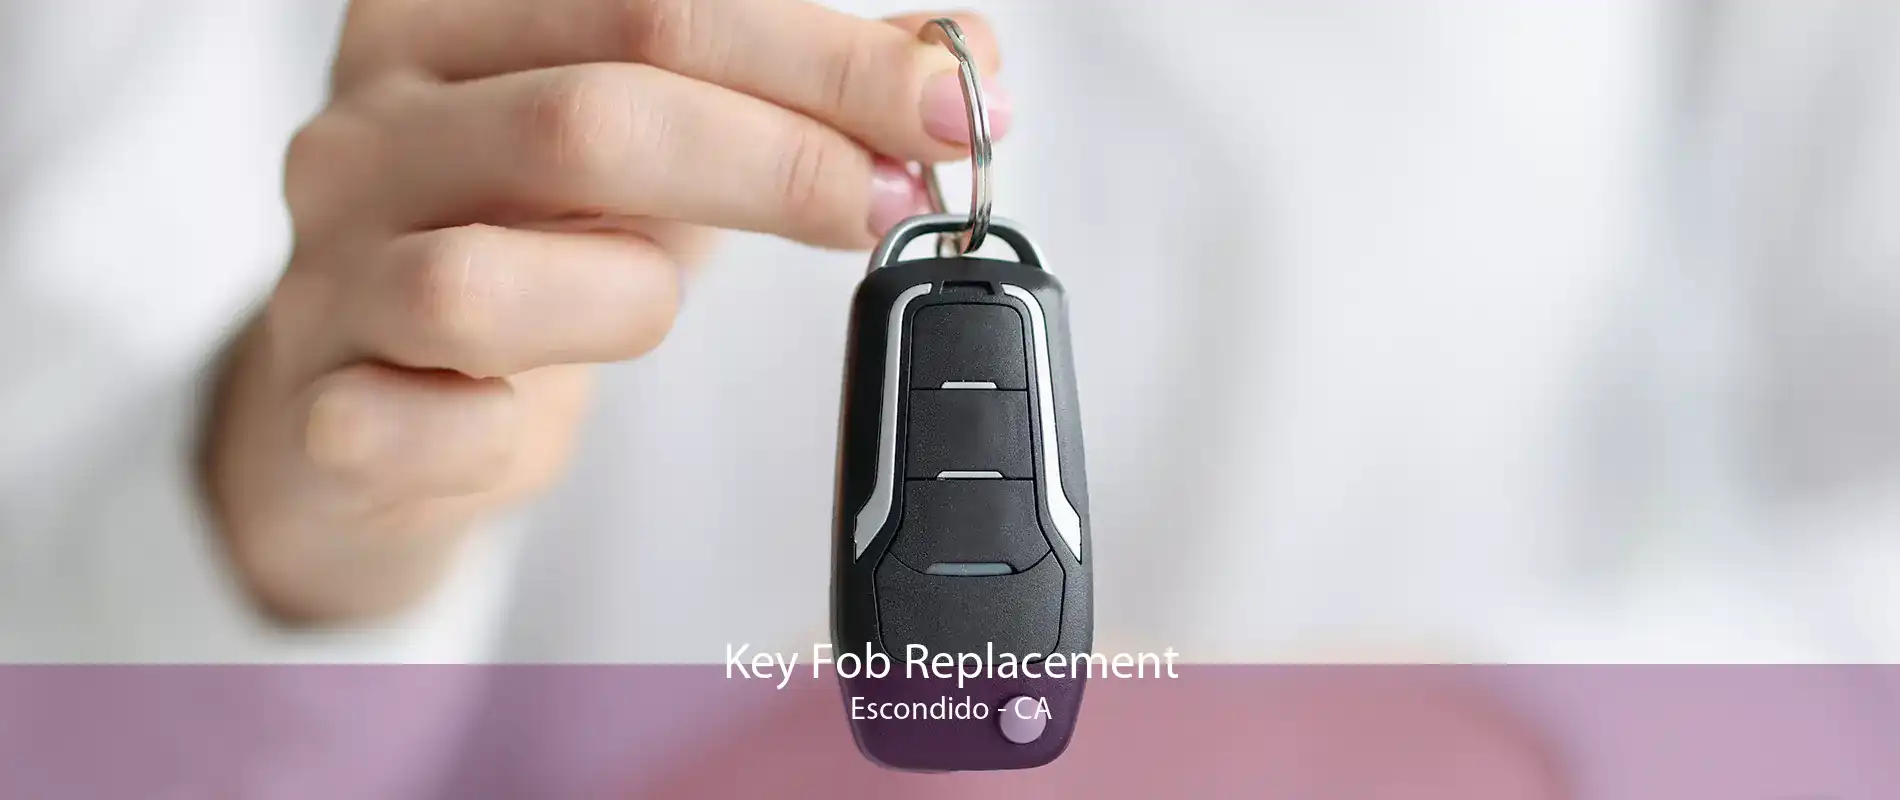 Key Fob Replacement Escondido - CA